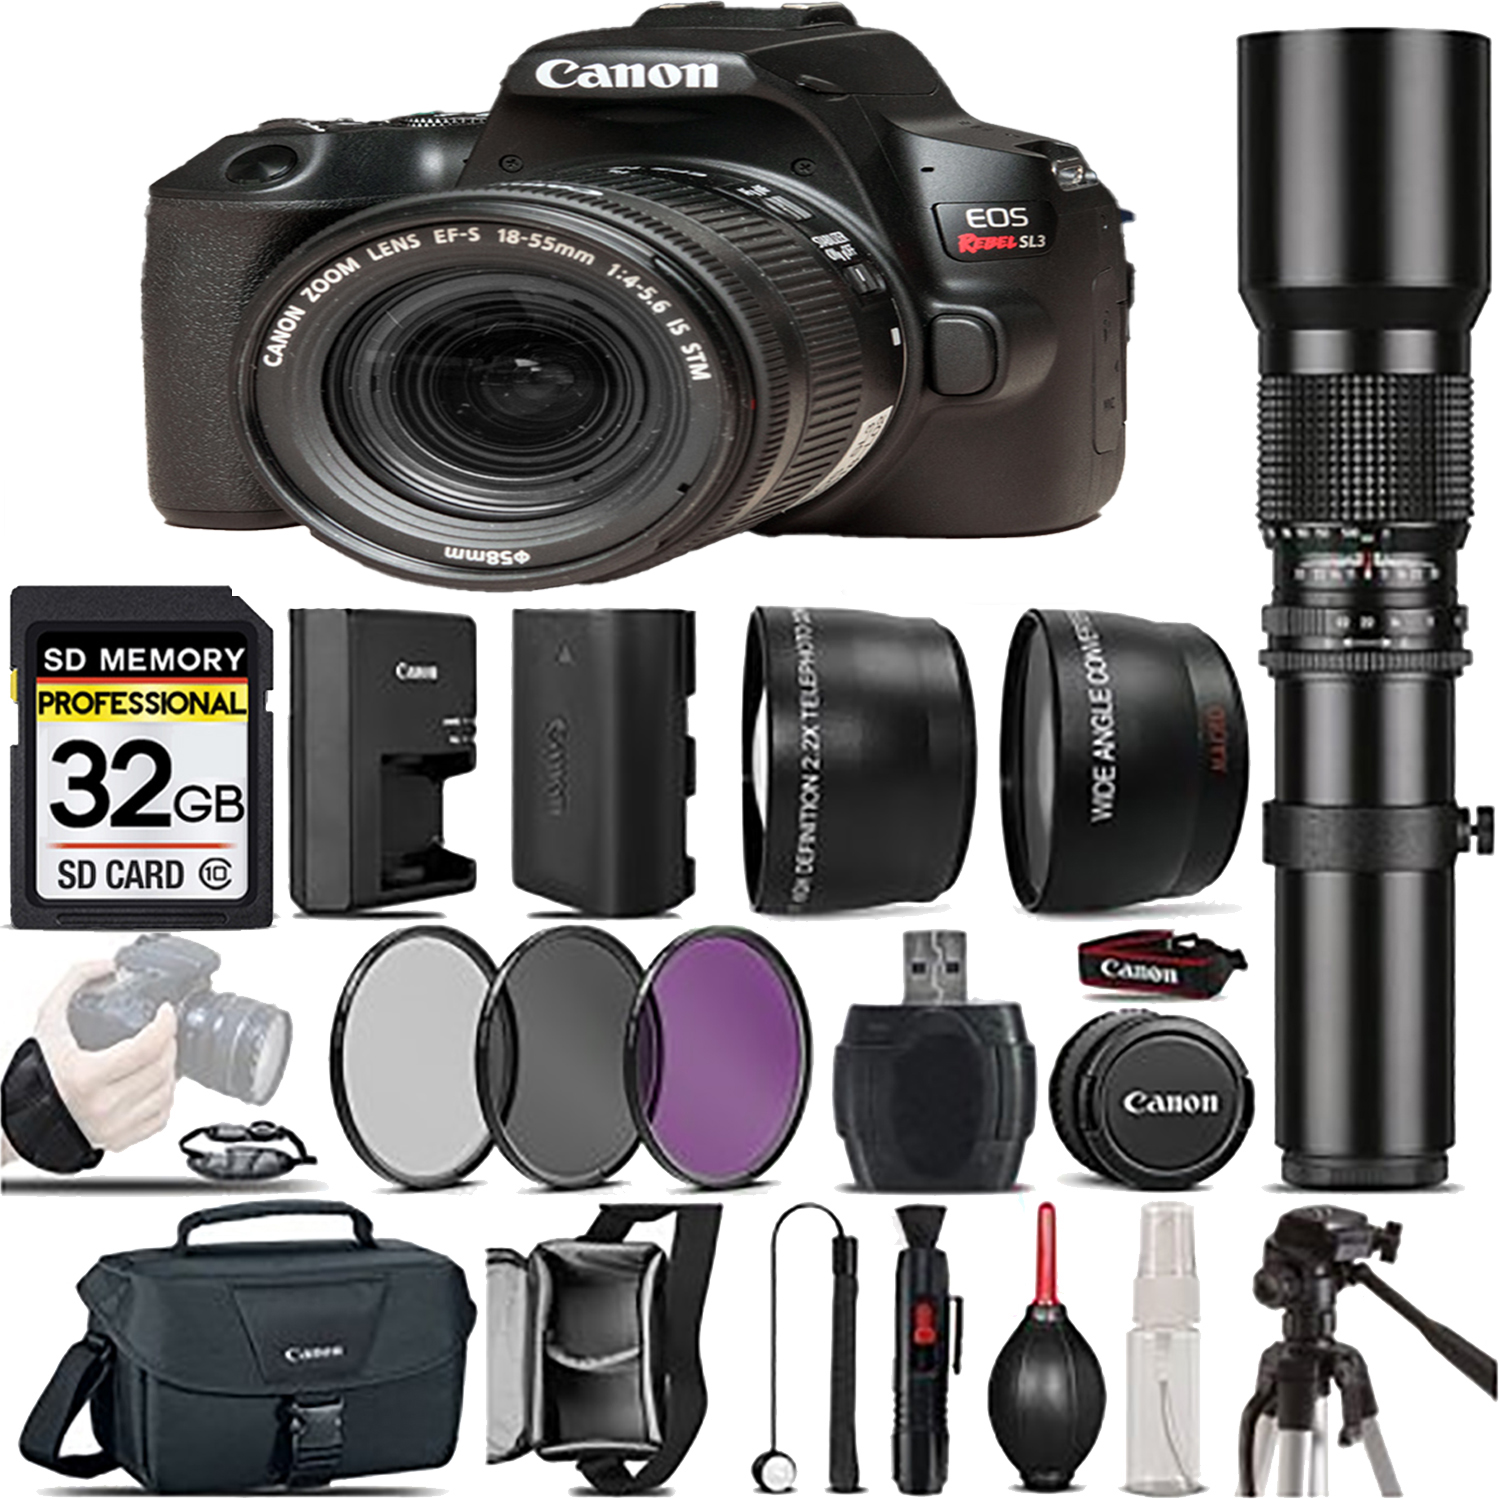 EOS Rebel SL3 DSLR Camera(Black) + 18-55mm IS STM + 500mm - Best Value Kit *FREE SHIPPING*